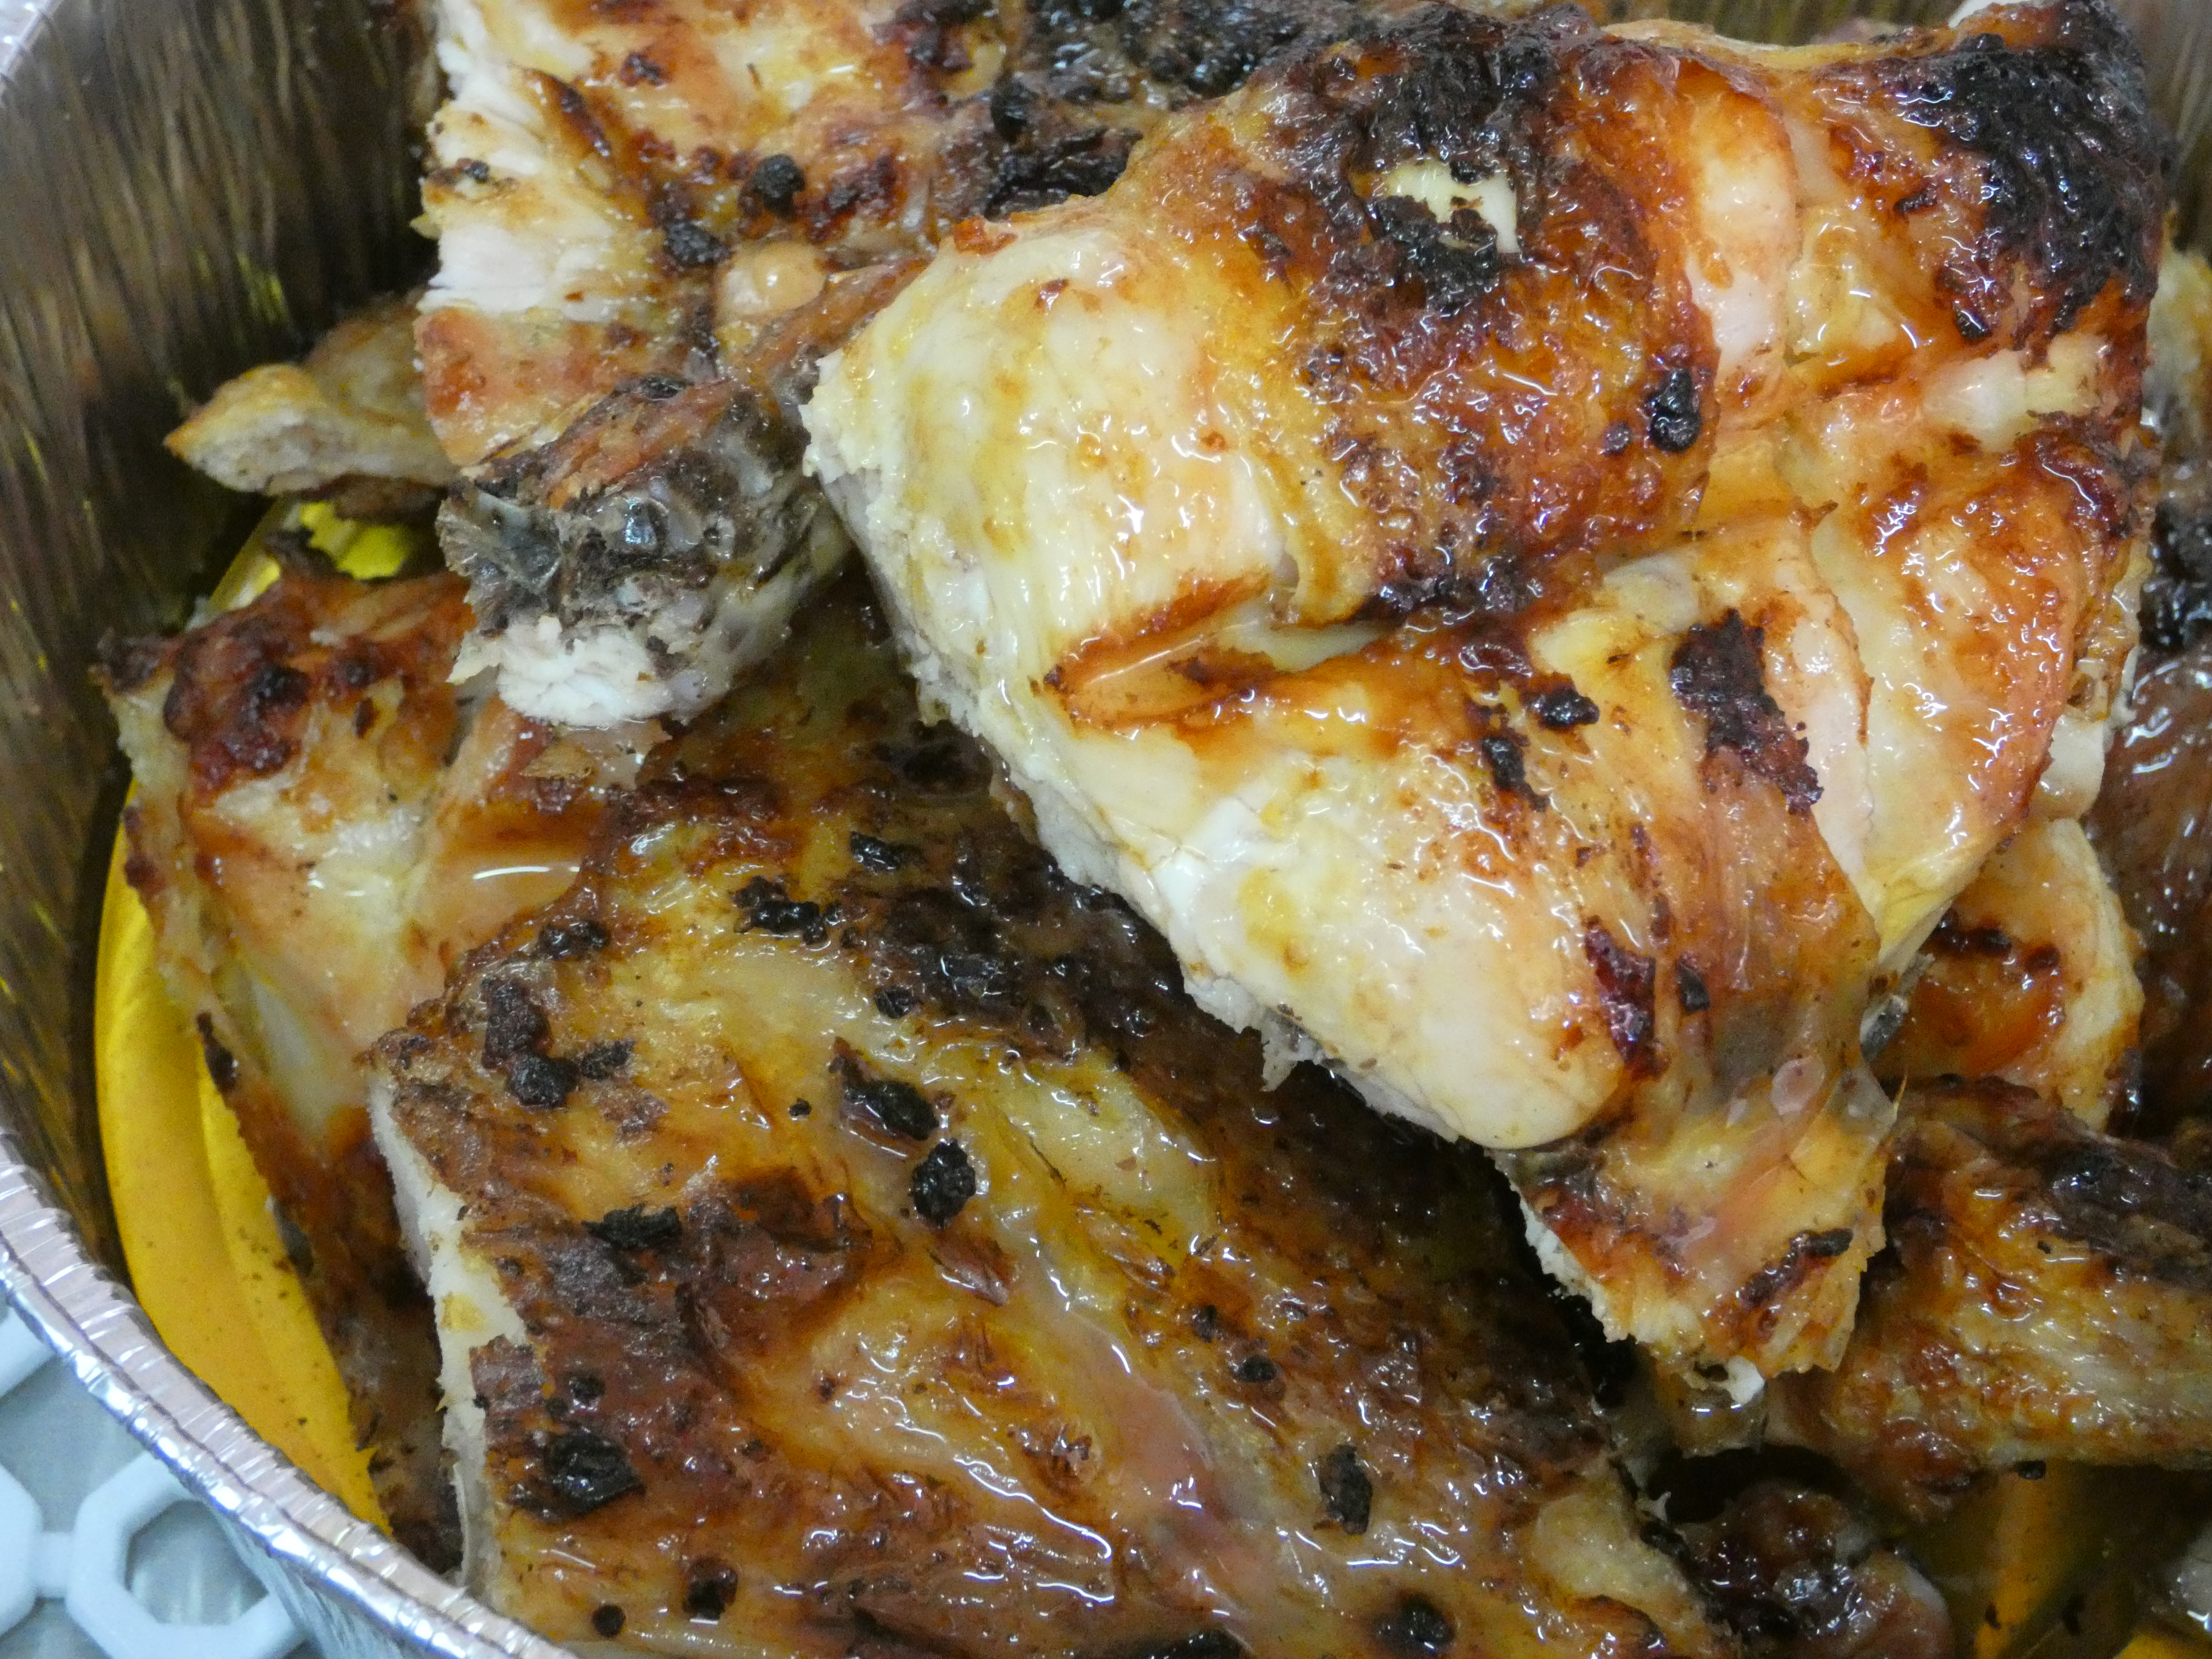 pollo asado, cortado en trozos y cubierto con la salsa